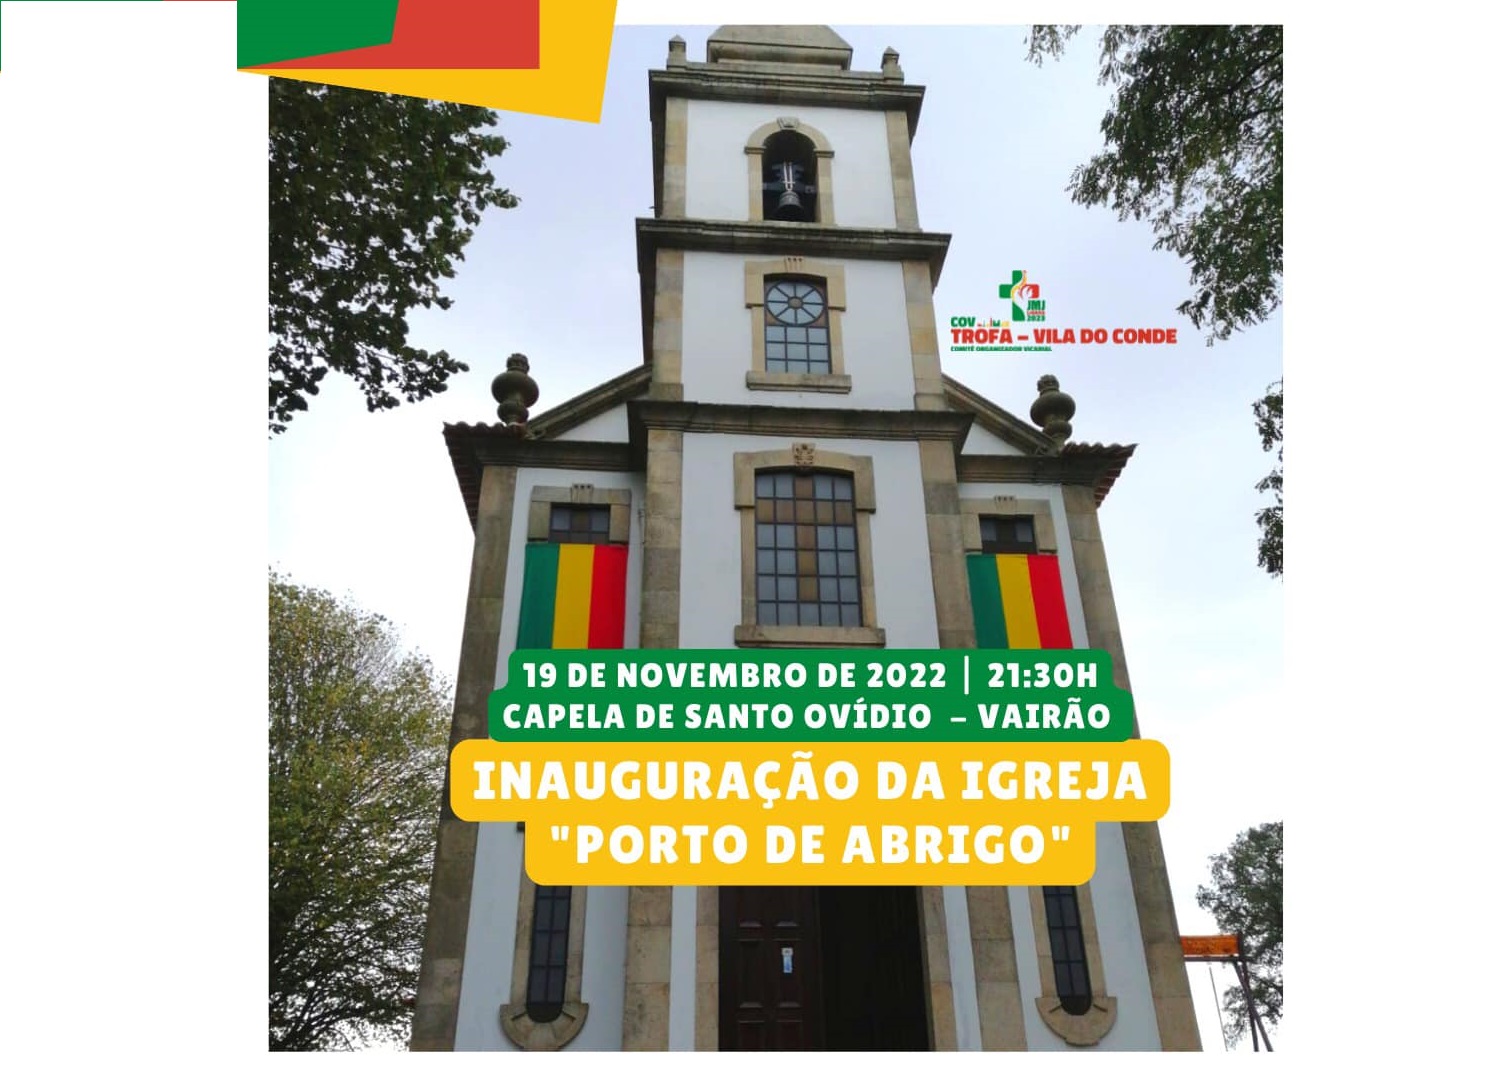 Vairão inaugura amanhã igreja Porto de Abrigo